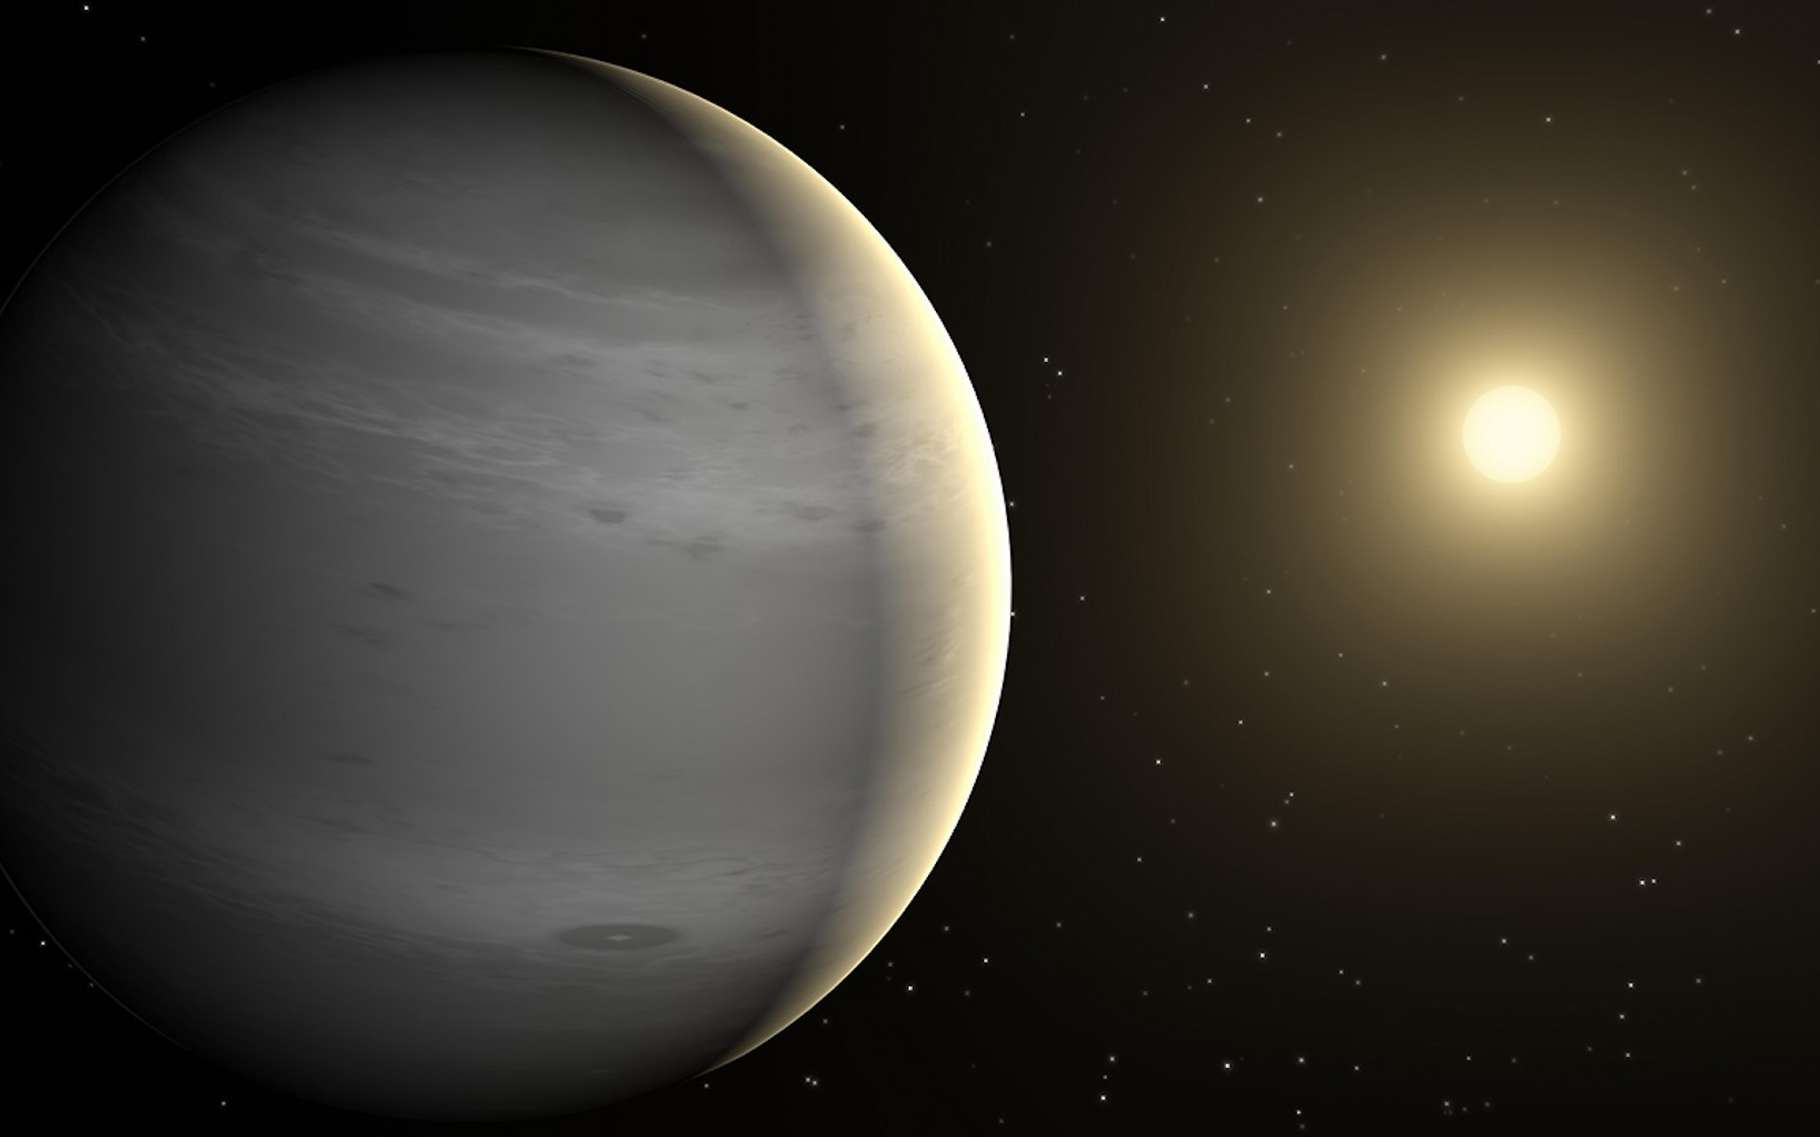 Le télescope James-Webb fait une découverte exceptionnelle en détectant ce gaz dans une exoplanète